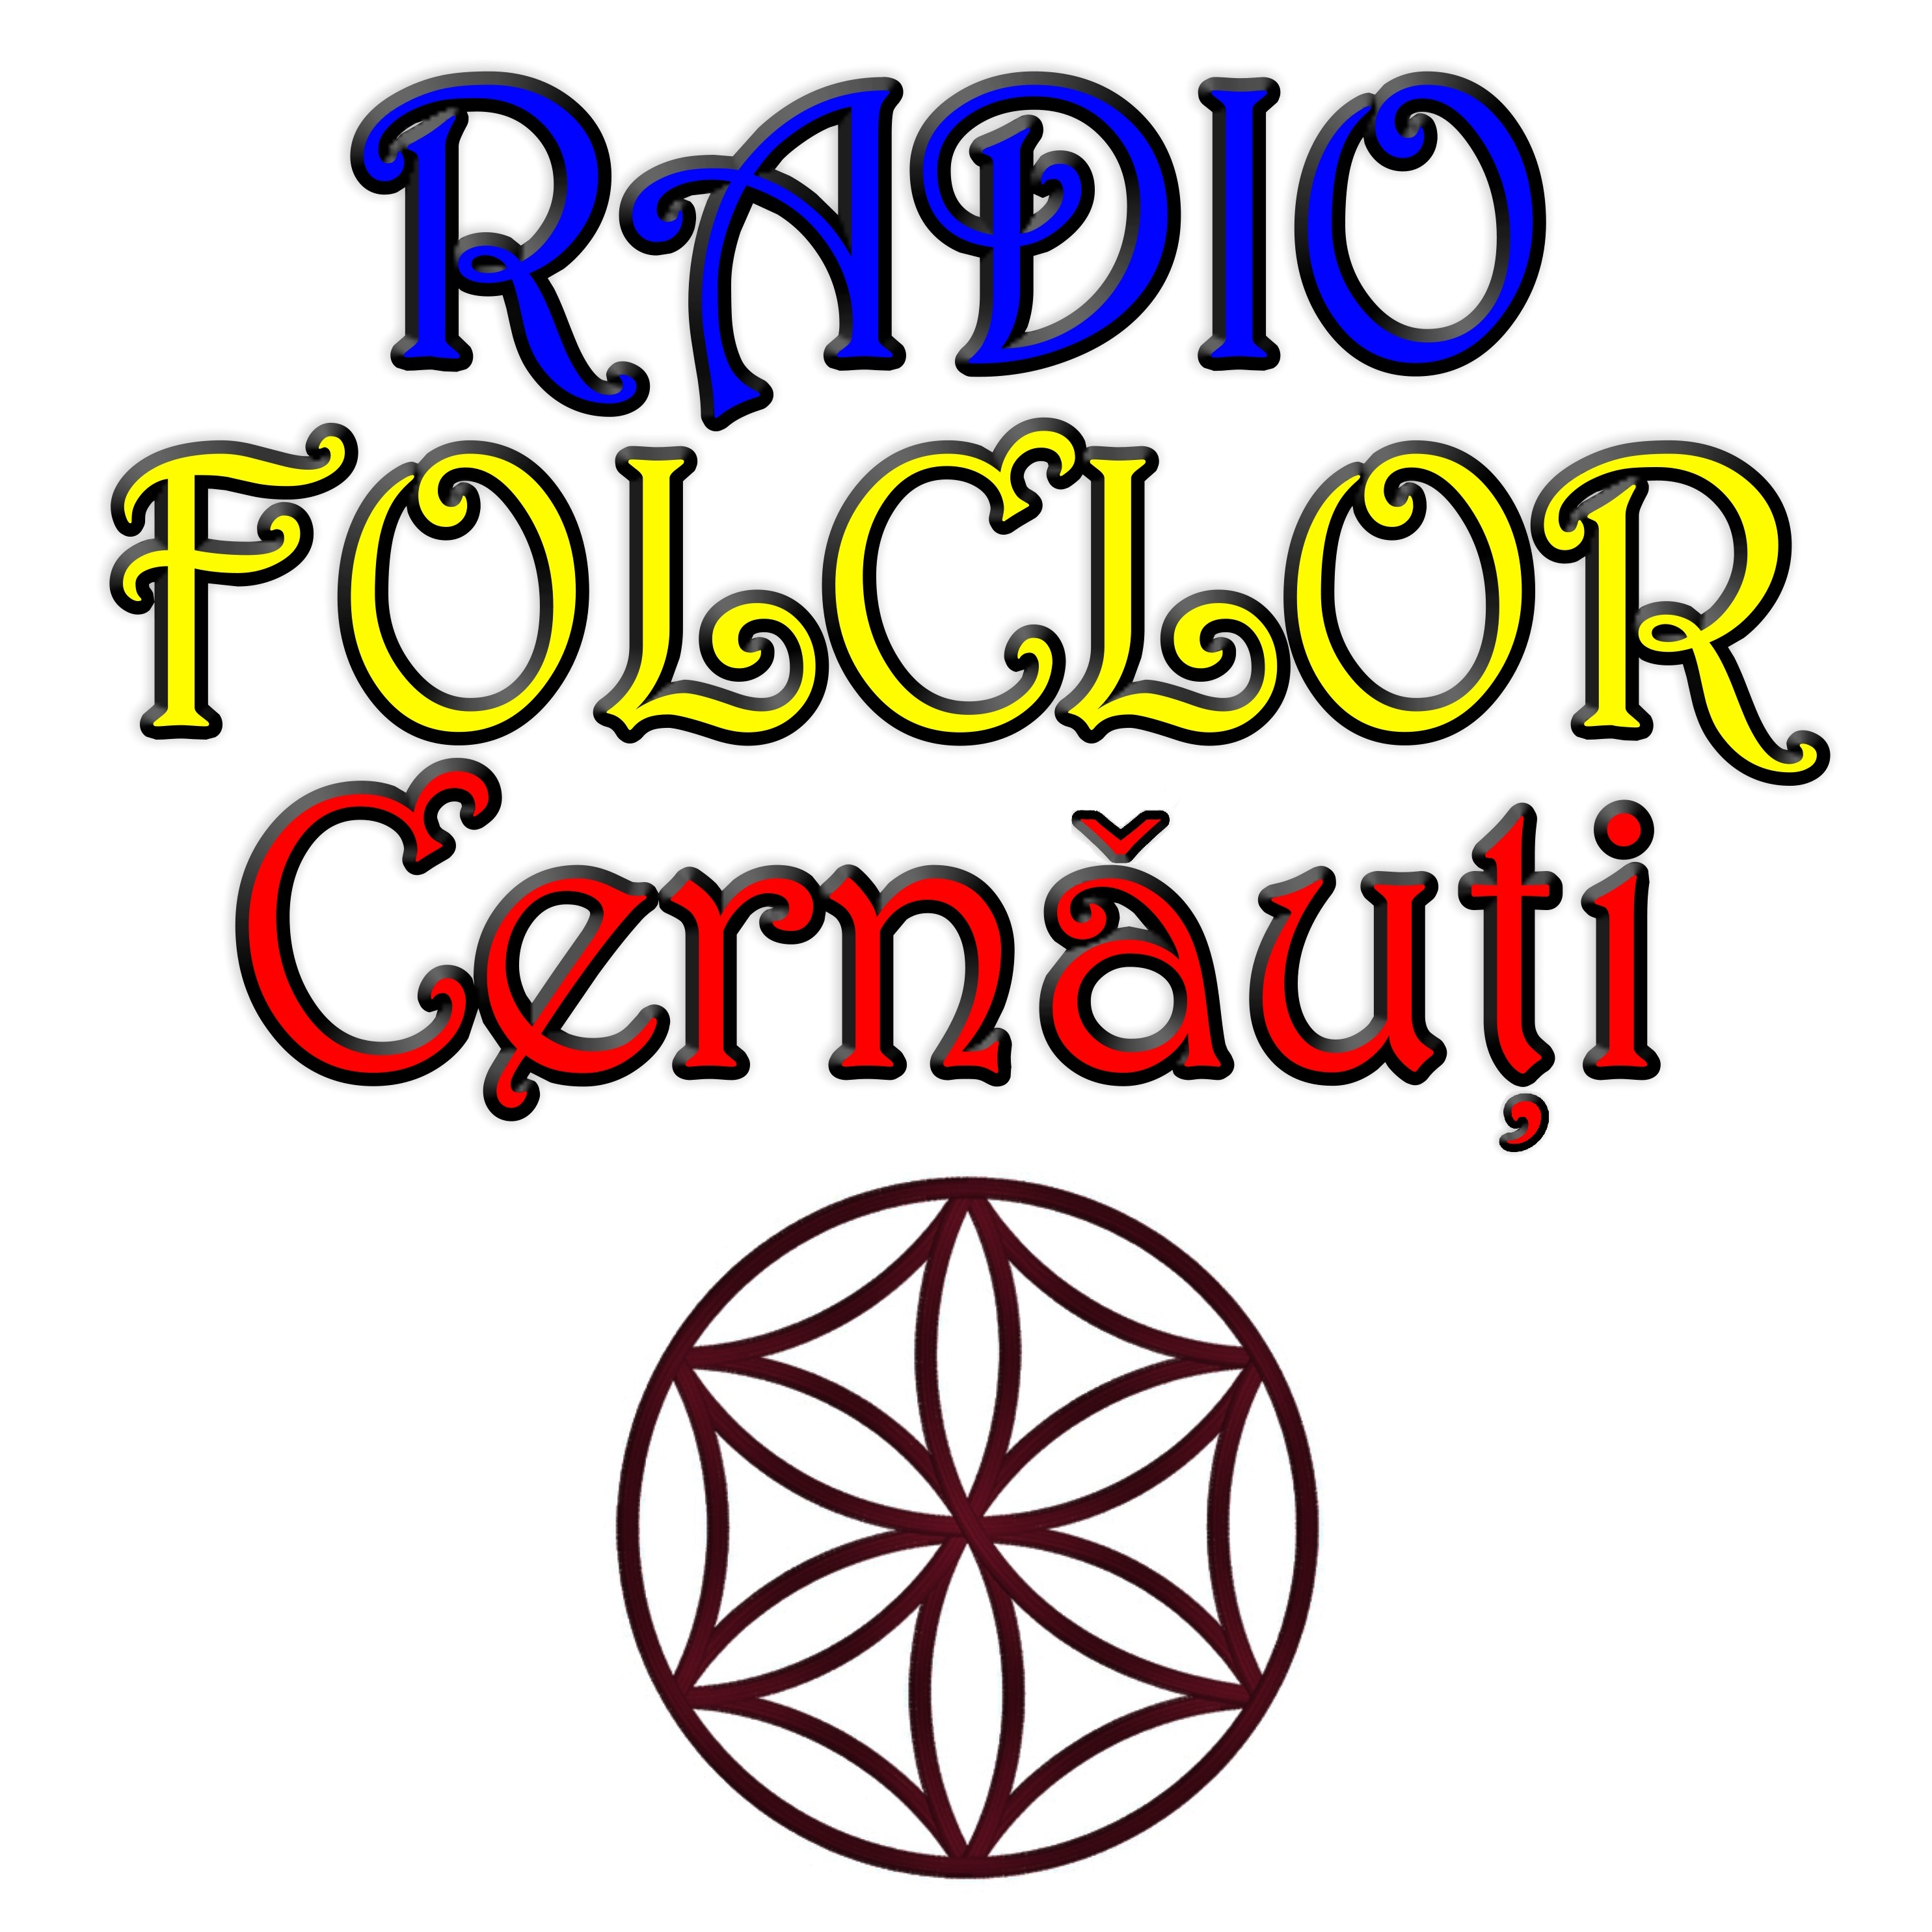 Radio Folclor Cernau?i